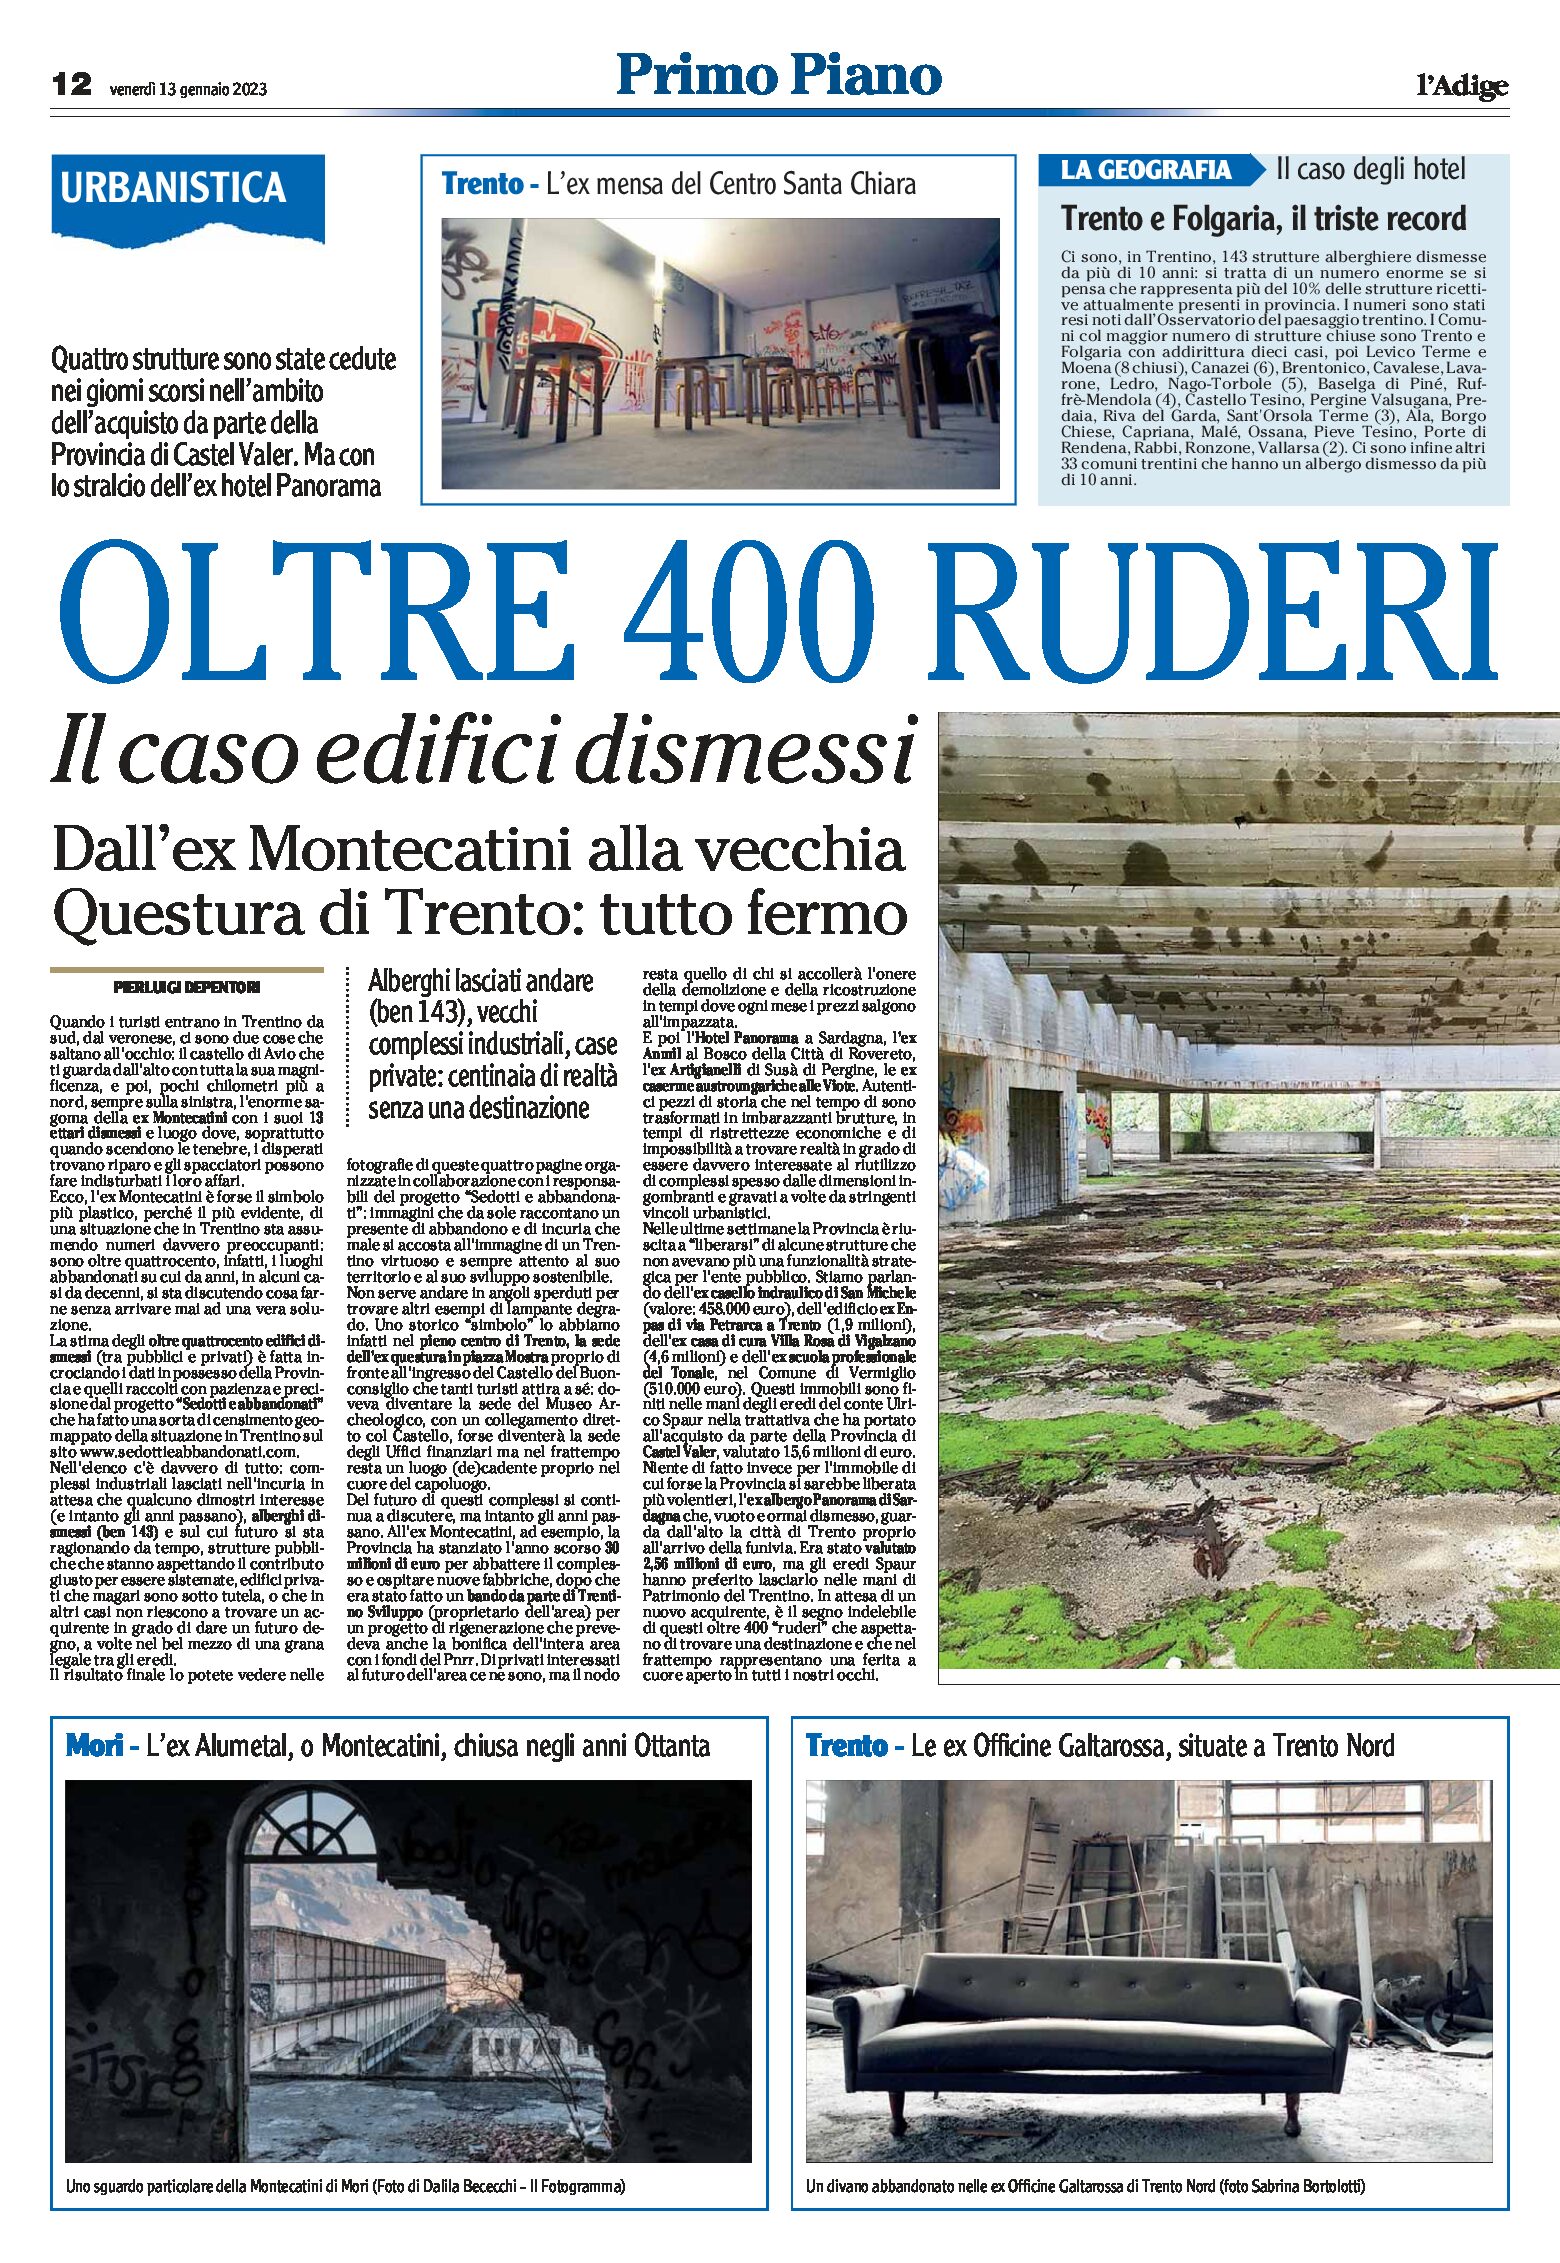 Trentino: oltre 400 ruderi. Il caso edifici dismessi. Luoghi “sedotti e abbandonati”